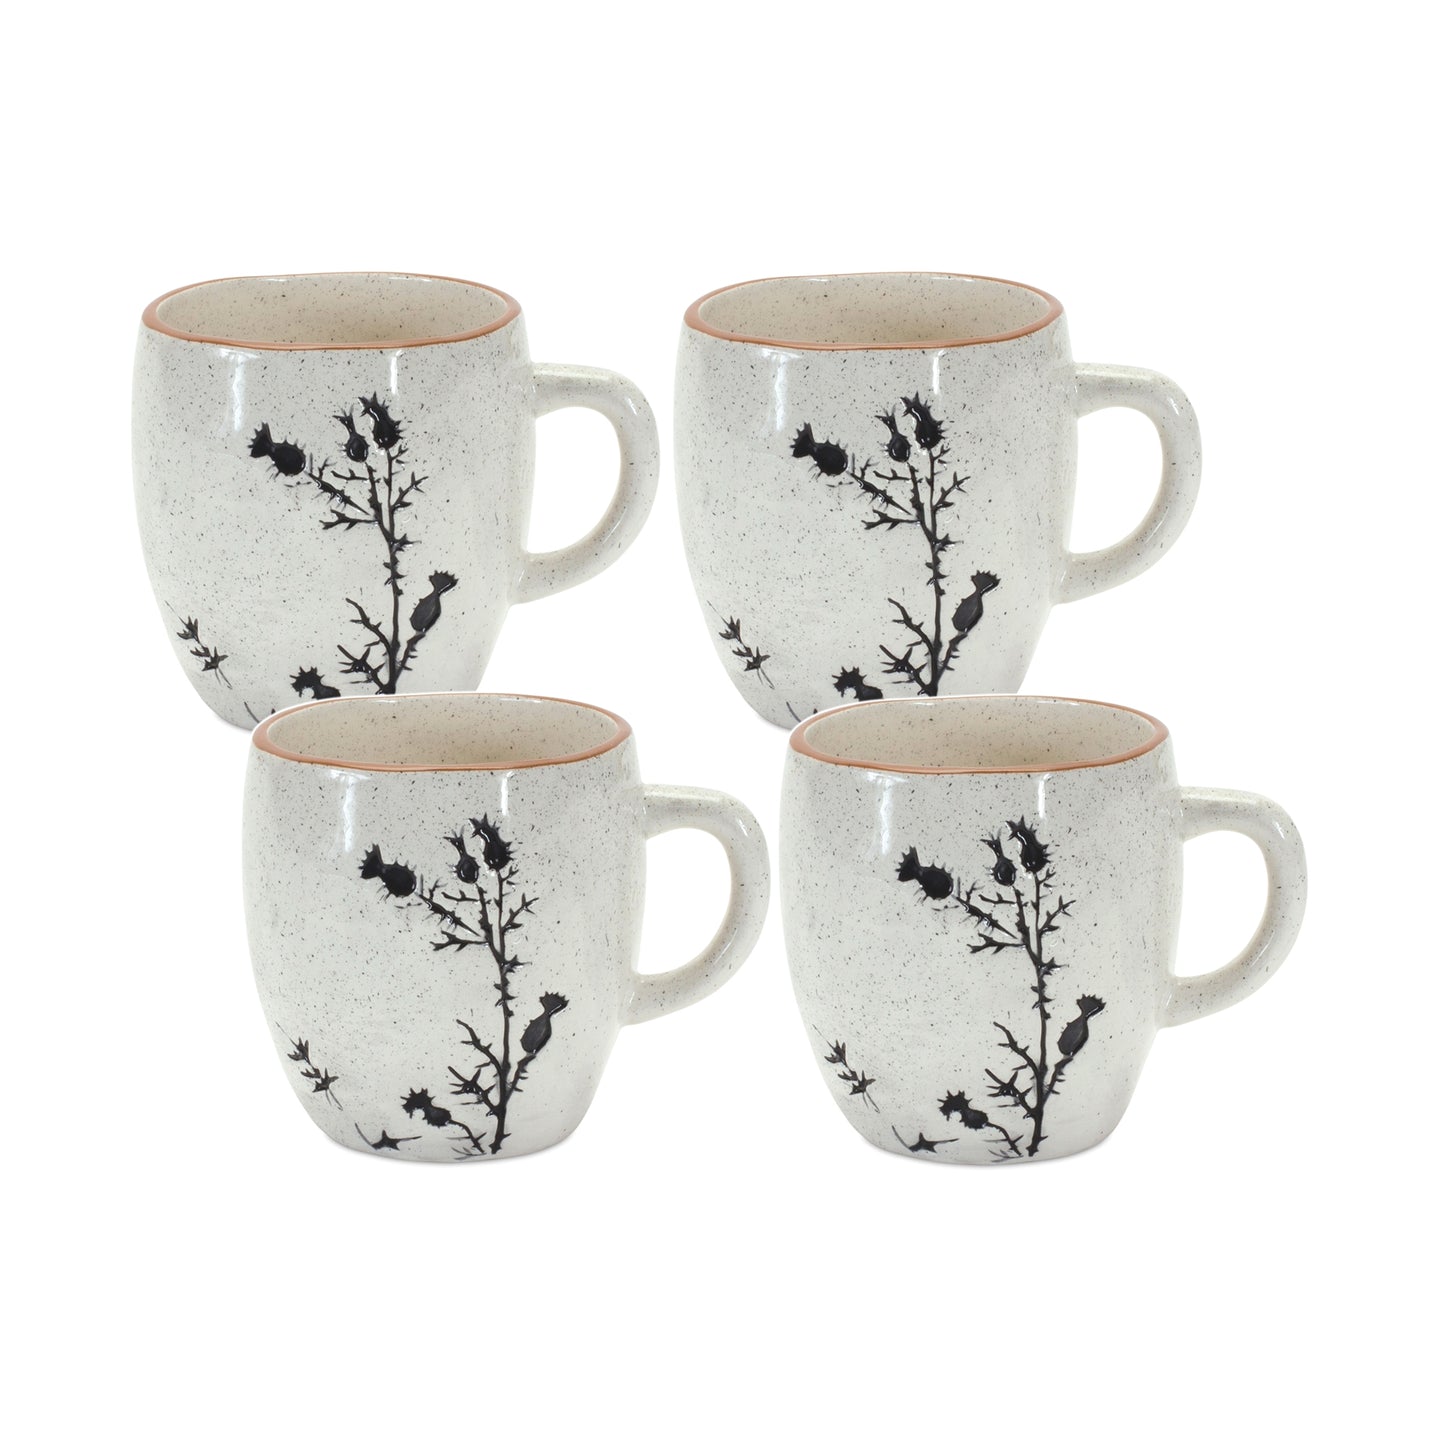 Mug (Set of 4) 3.25"H Ceramic